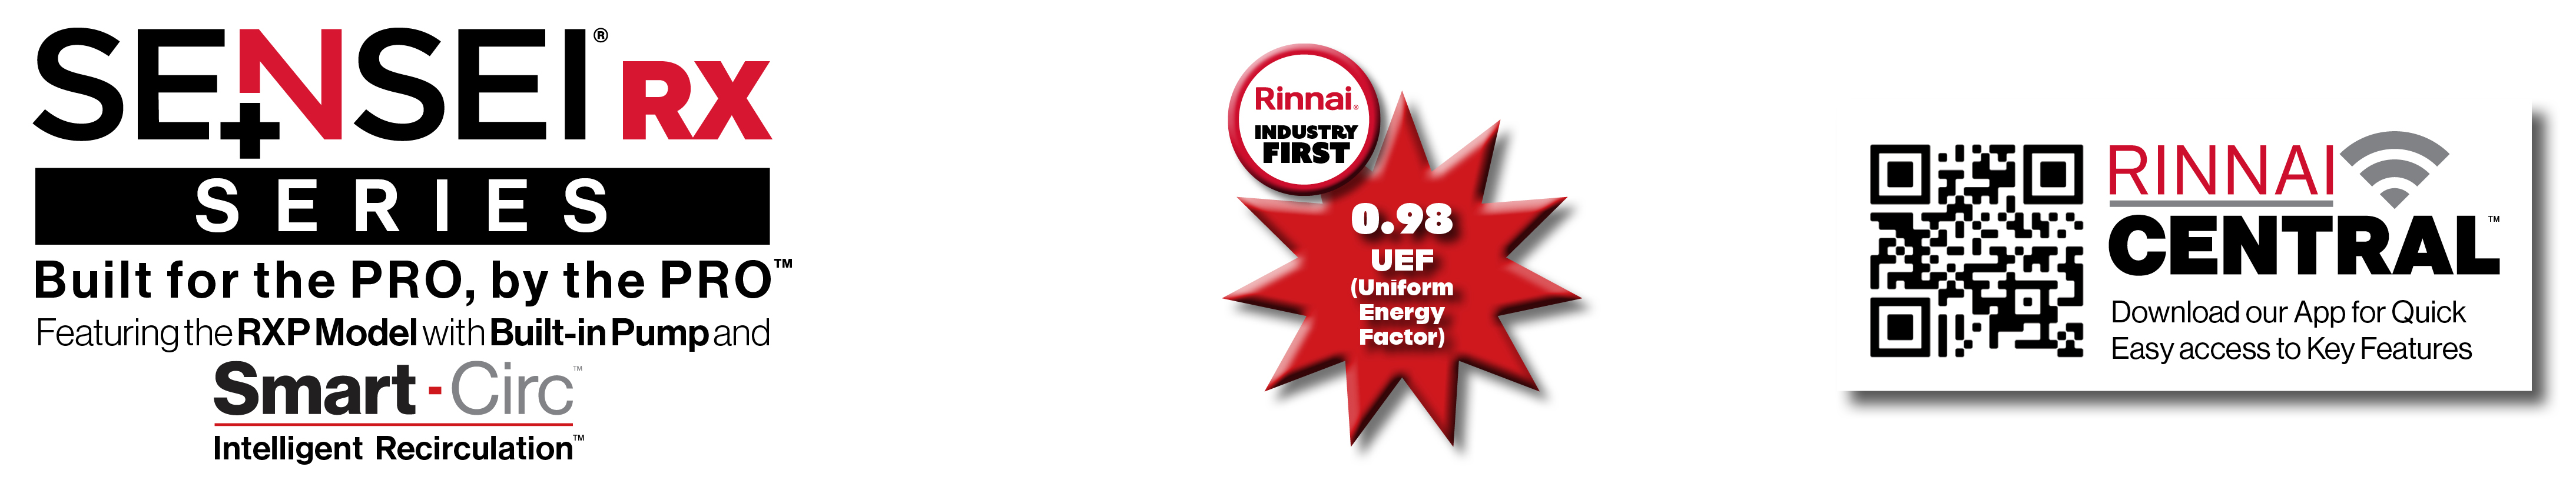 Modèle SENSEI RX, 0,98 UEF (Facteur énergétique uniforme), application Central et code QR